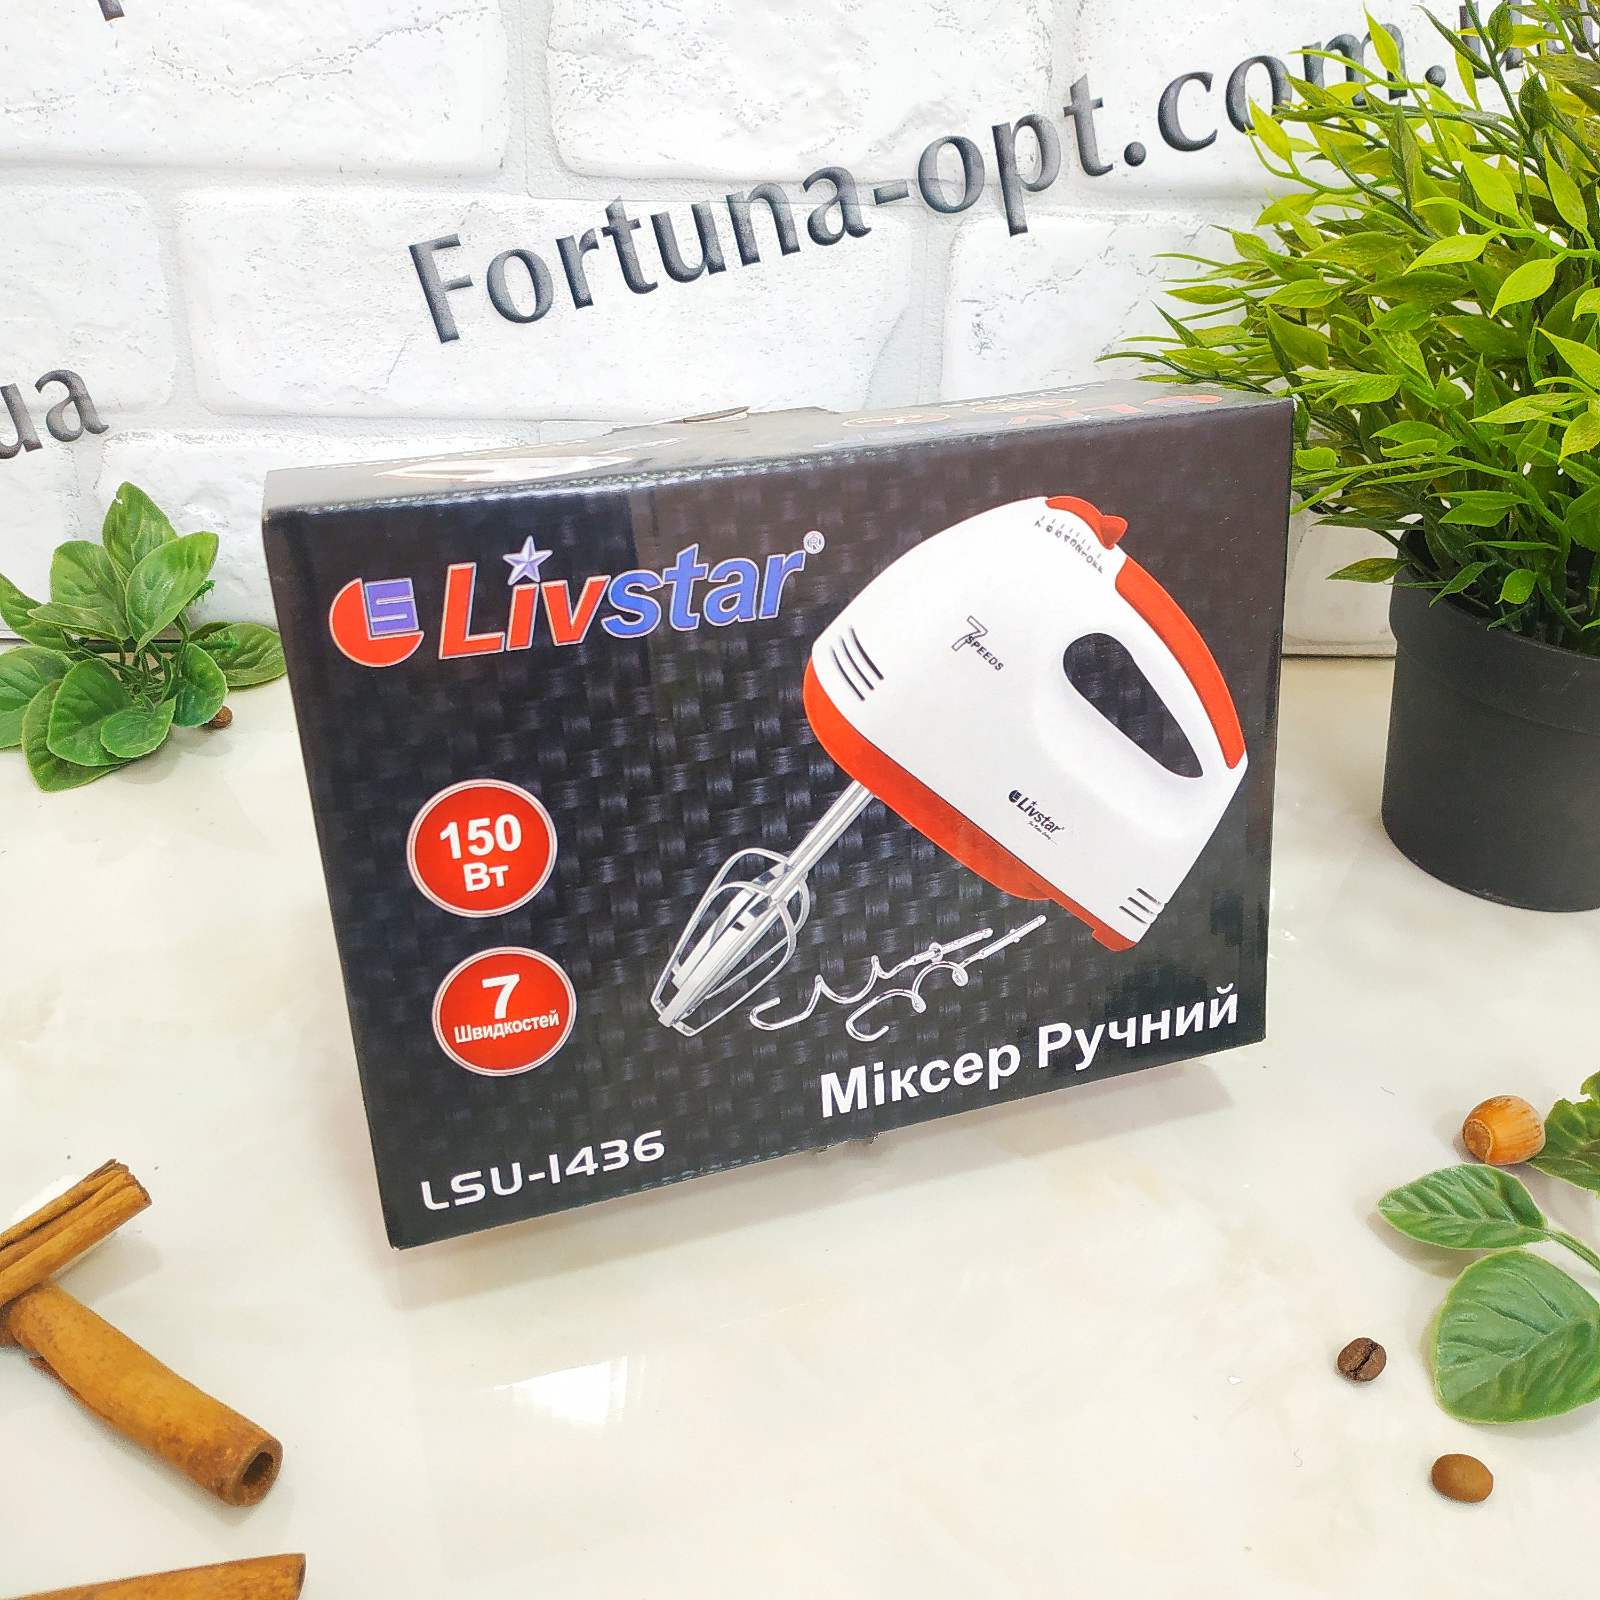 Миксер Livstar LSU - 1436 ✅ базовая цена $9.58 ✔ Опт ✔ Скидки ✔ Заходите! - Интернет-магазин ✅ Фортуна-опт ✅